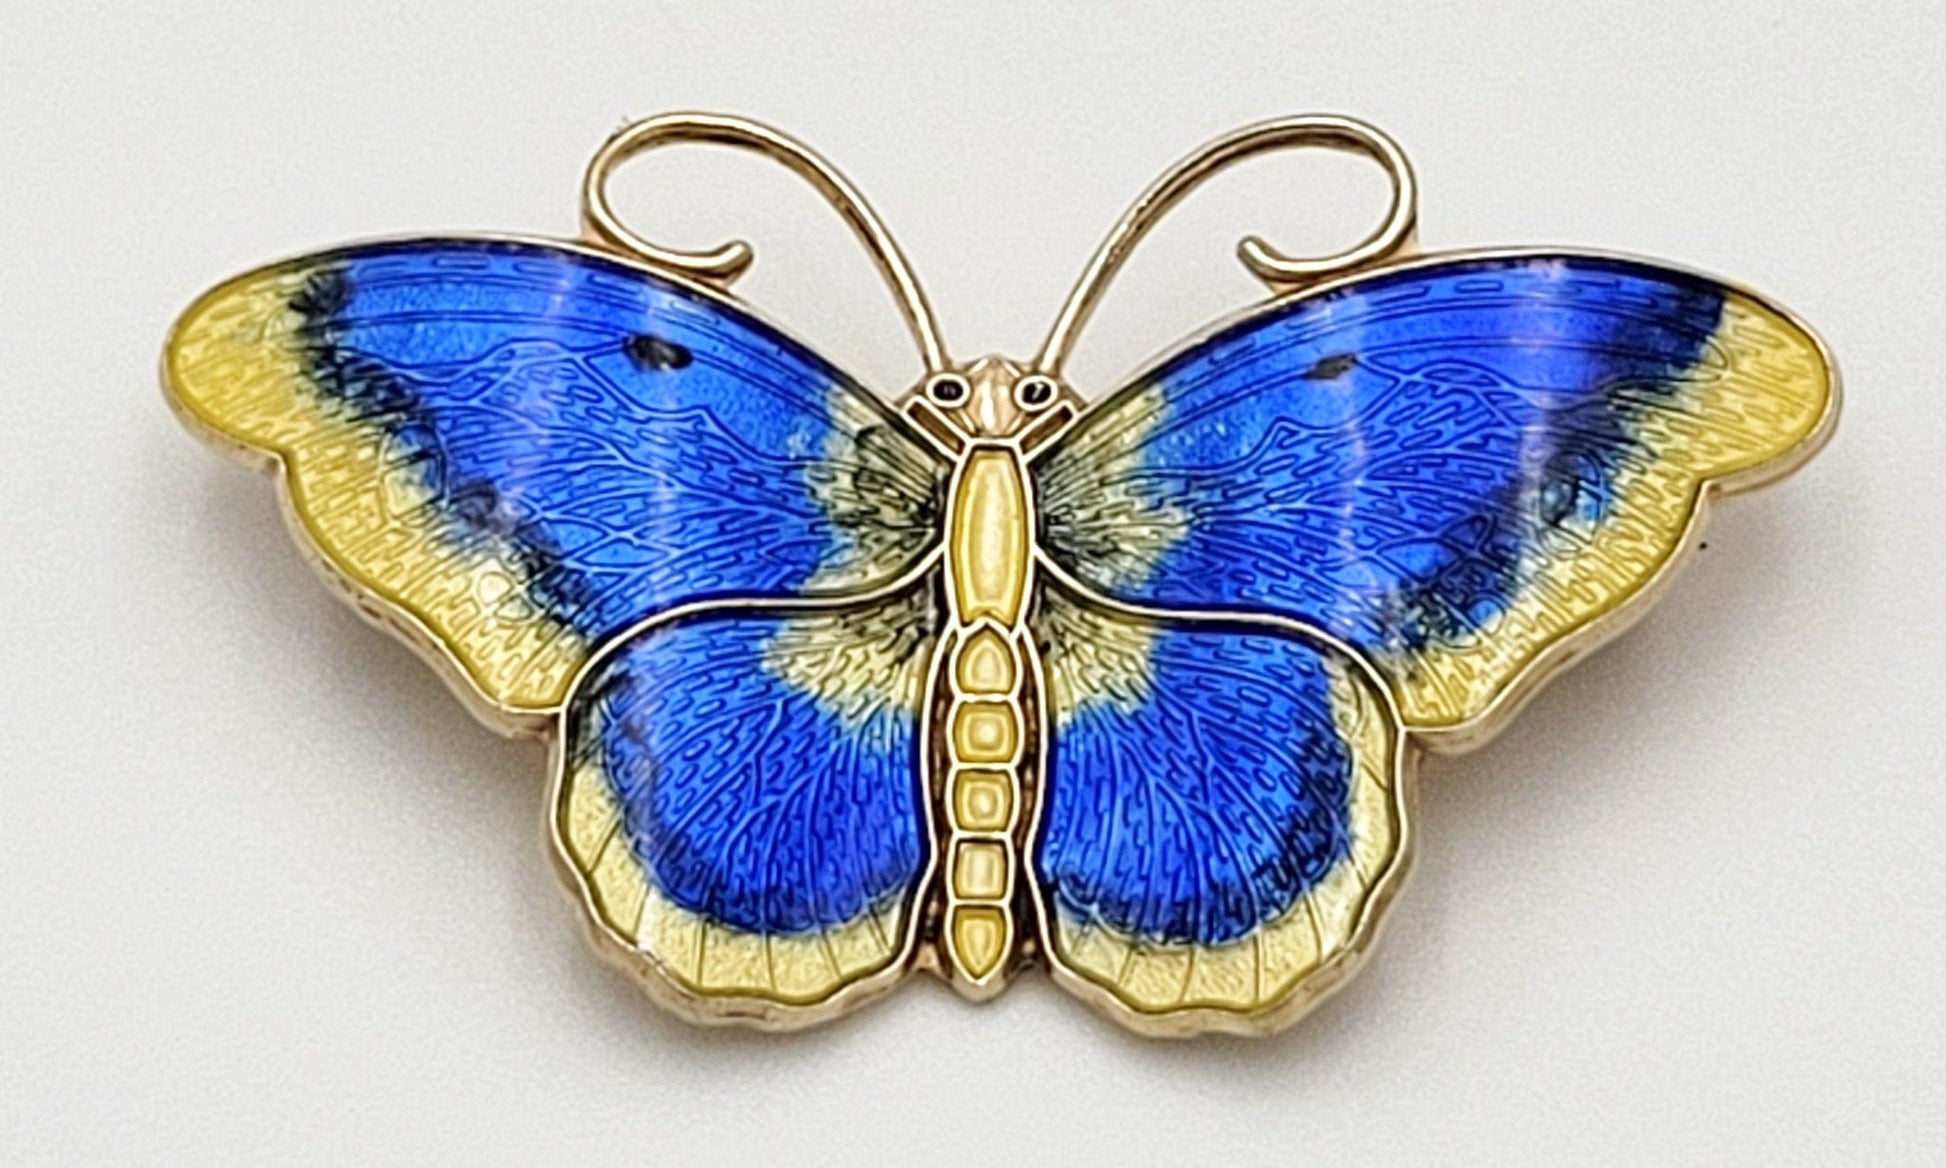 Hroar Prydz Jewelry Norwegian Designer Hroar Prydz Sterling Enamel Butterfly HUGE Brooch 20s/30s